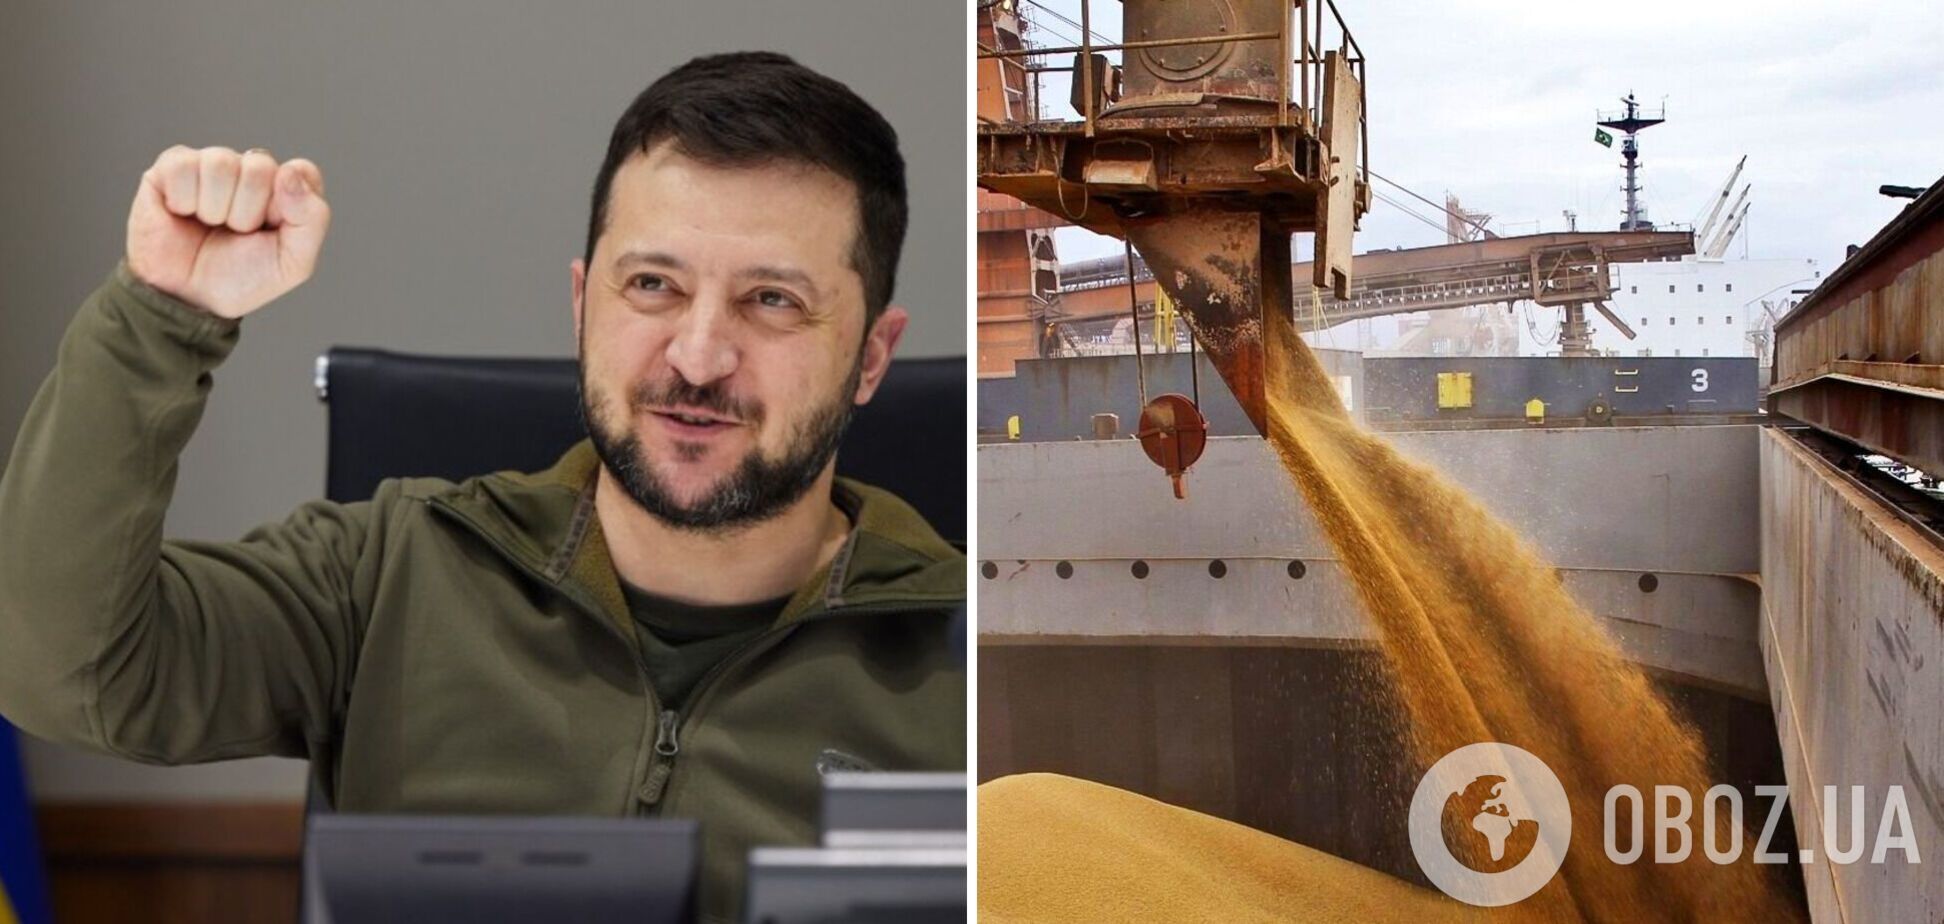 Украина уже экспортировала миллион тонн зерна и показала, что остается одним из гарантов мировой продовольственной безопасности, – Зеленский